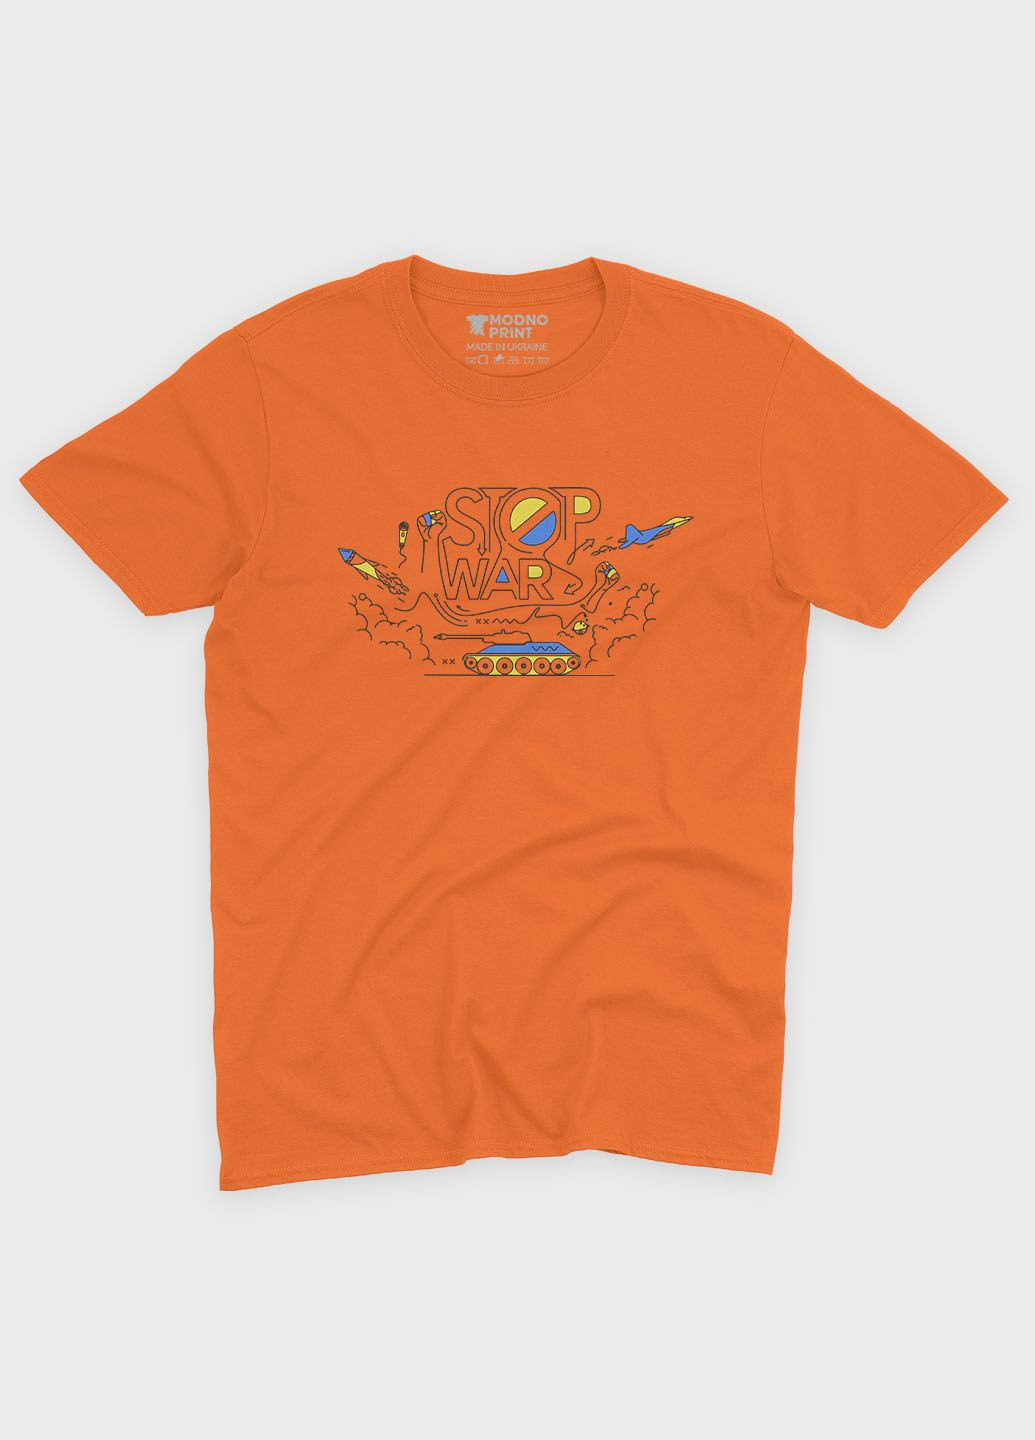 Оранжевая демисезонная футболка для мальчика с патриотическим принтом (ts001-4-ora-005-1-087-b) Modno